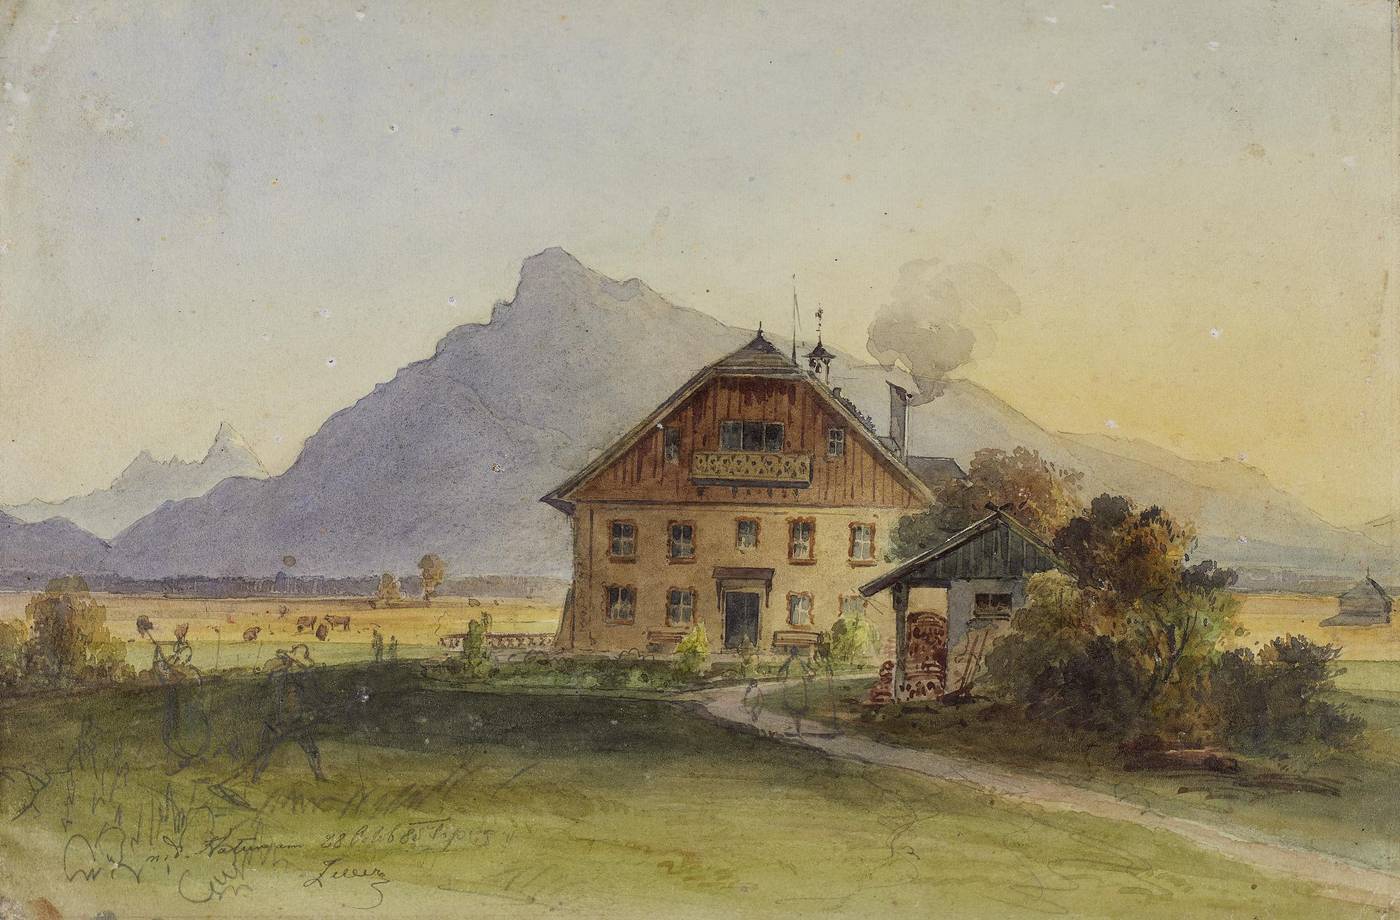 Friedrich (Fritz) Zeller (1817 - 1896), Bauernhaus vor der Kulisse des Untersberg, Bleistift, Aquarell auf Papier, 1885, Inv.-Nr. 1018-2021